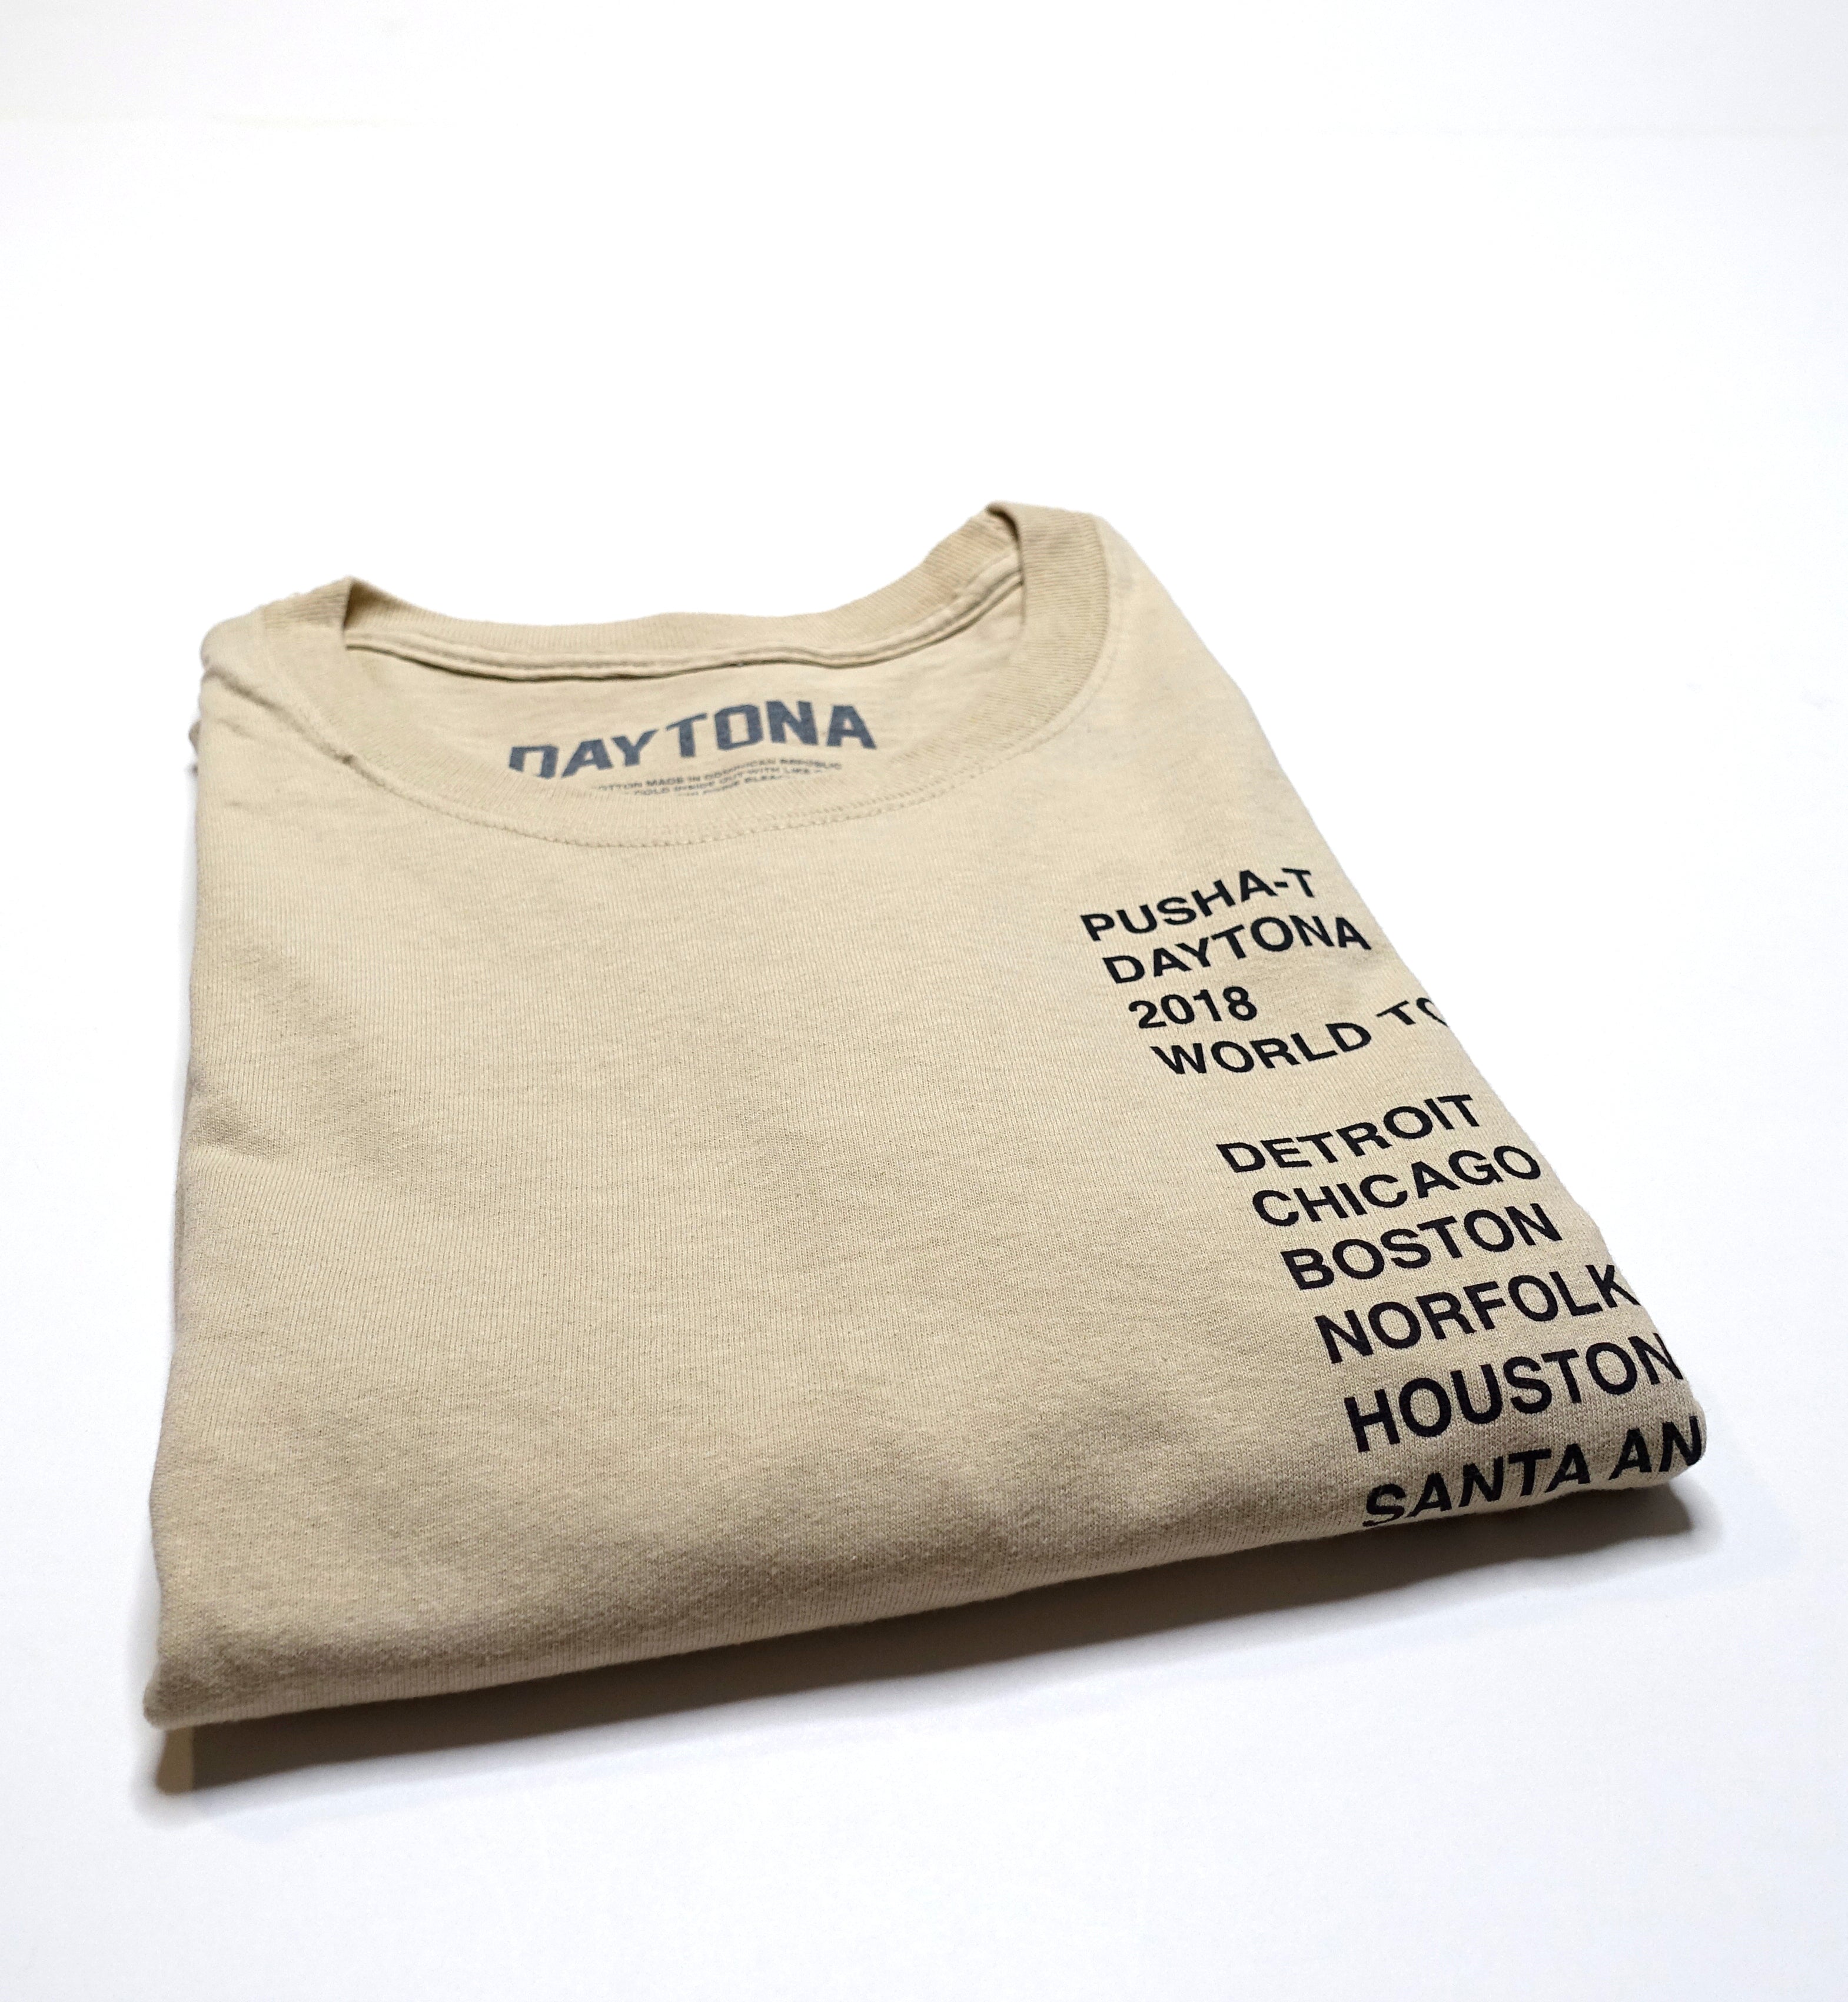 Pusha-T - Daytona 2018 World Tour Long Sleeve Shirt Size Large